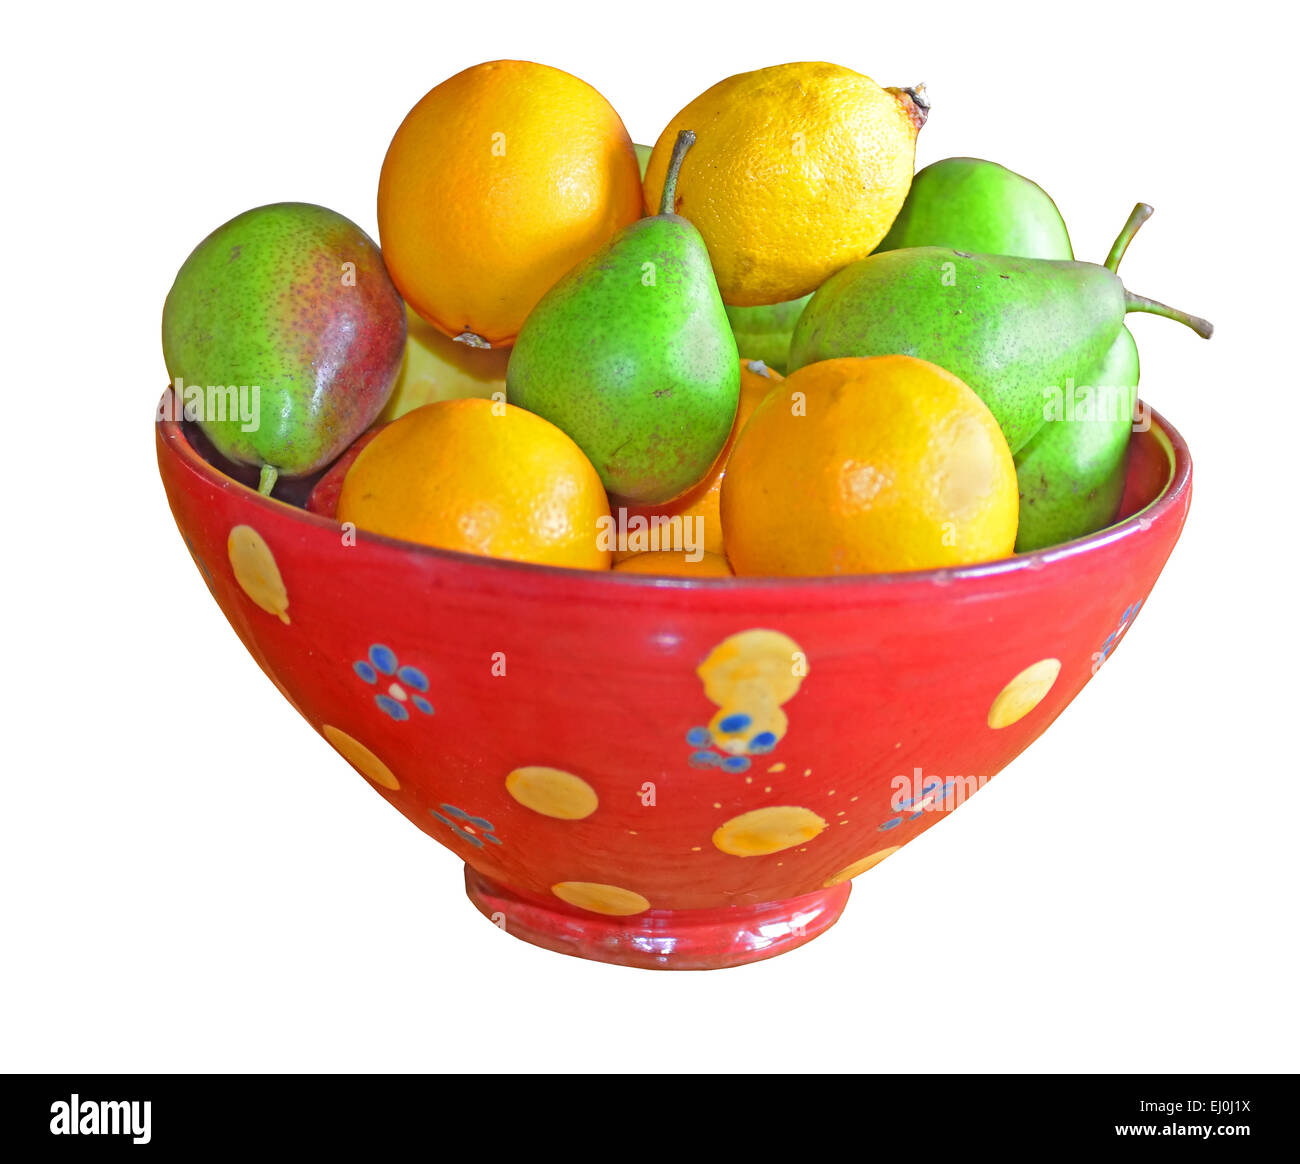 Stillleben mit gemischten Früchten in einer Schüssel auf einen Eichentisch. Isoilated vor einem weißen Hintergrund Stockfoto